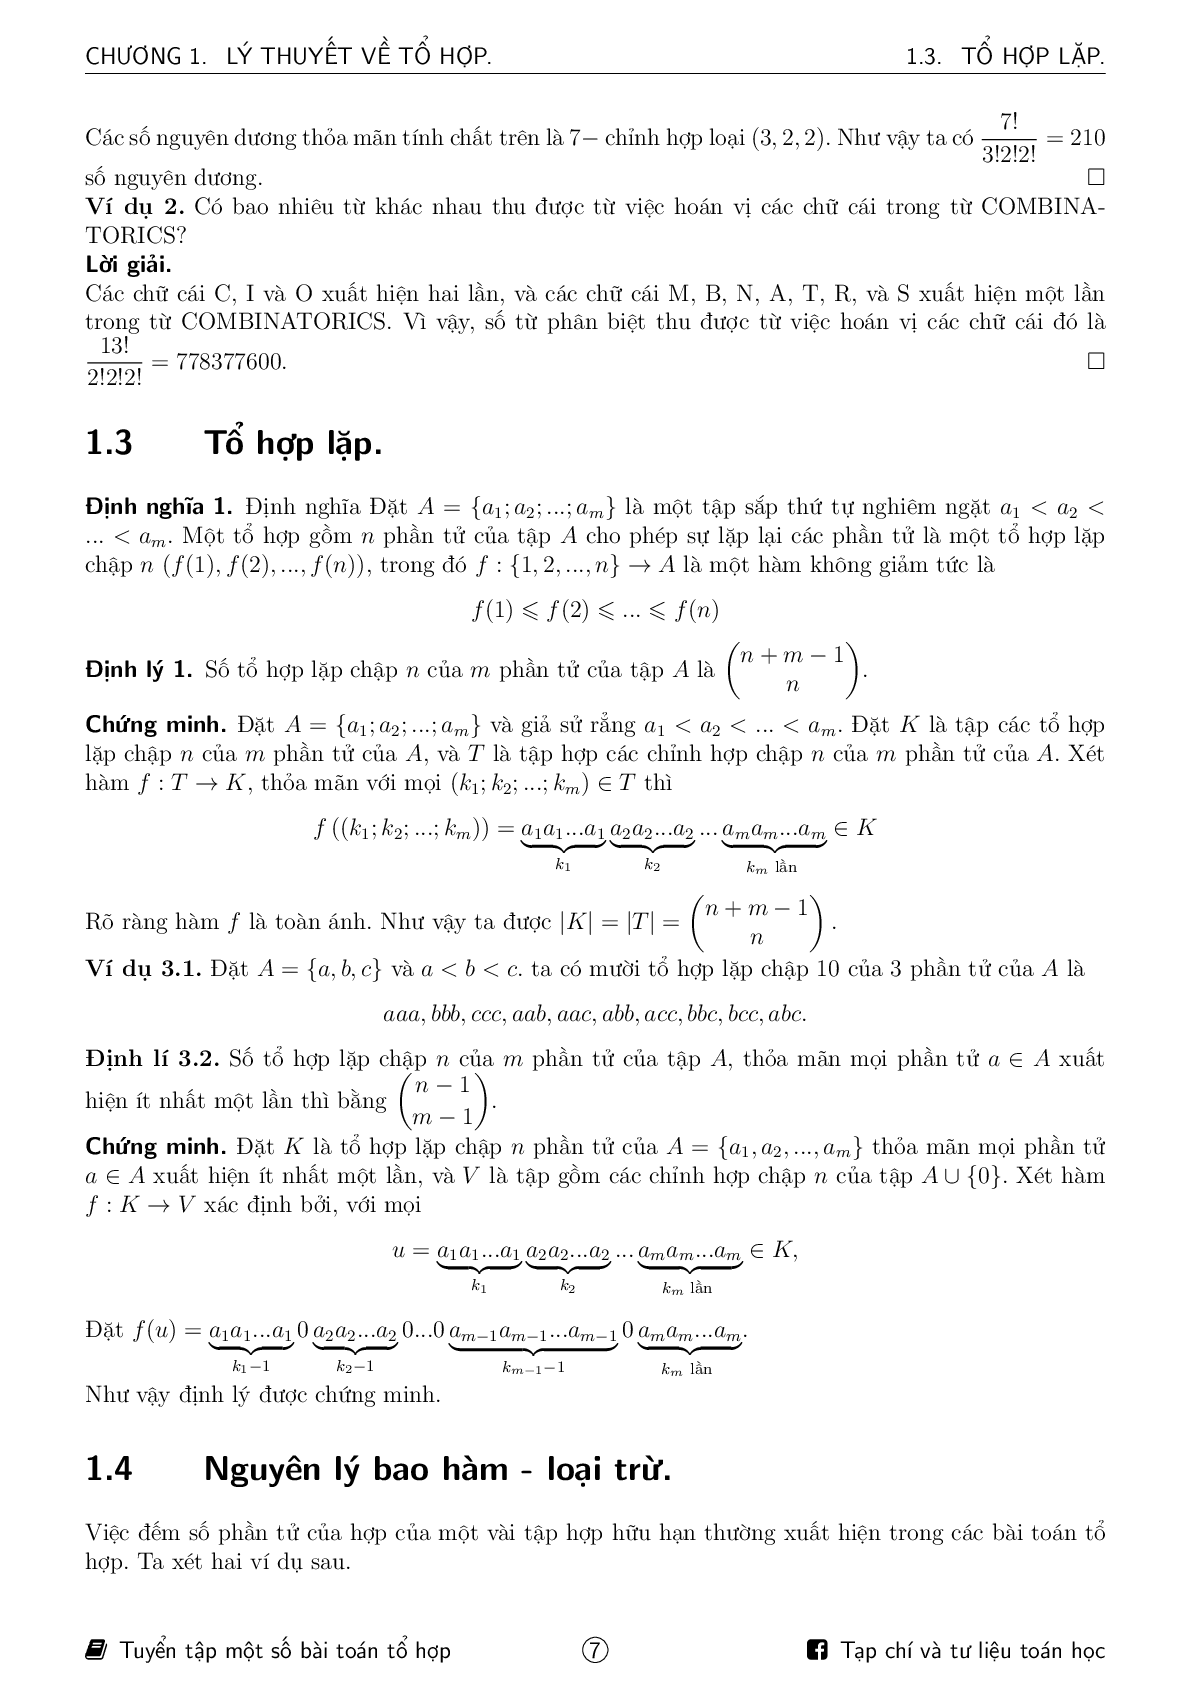 Tuyển tập một số bài toán tổ hợp ôn thi HSG Toán (trang 7)